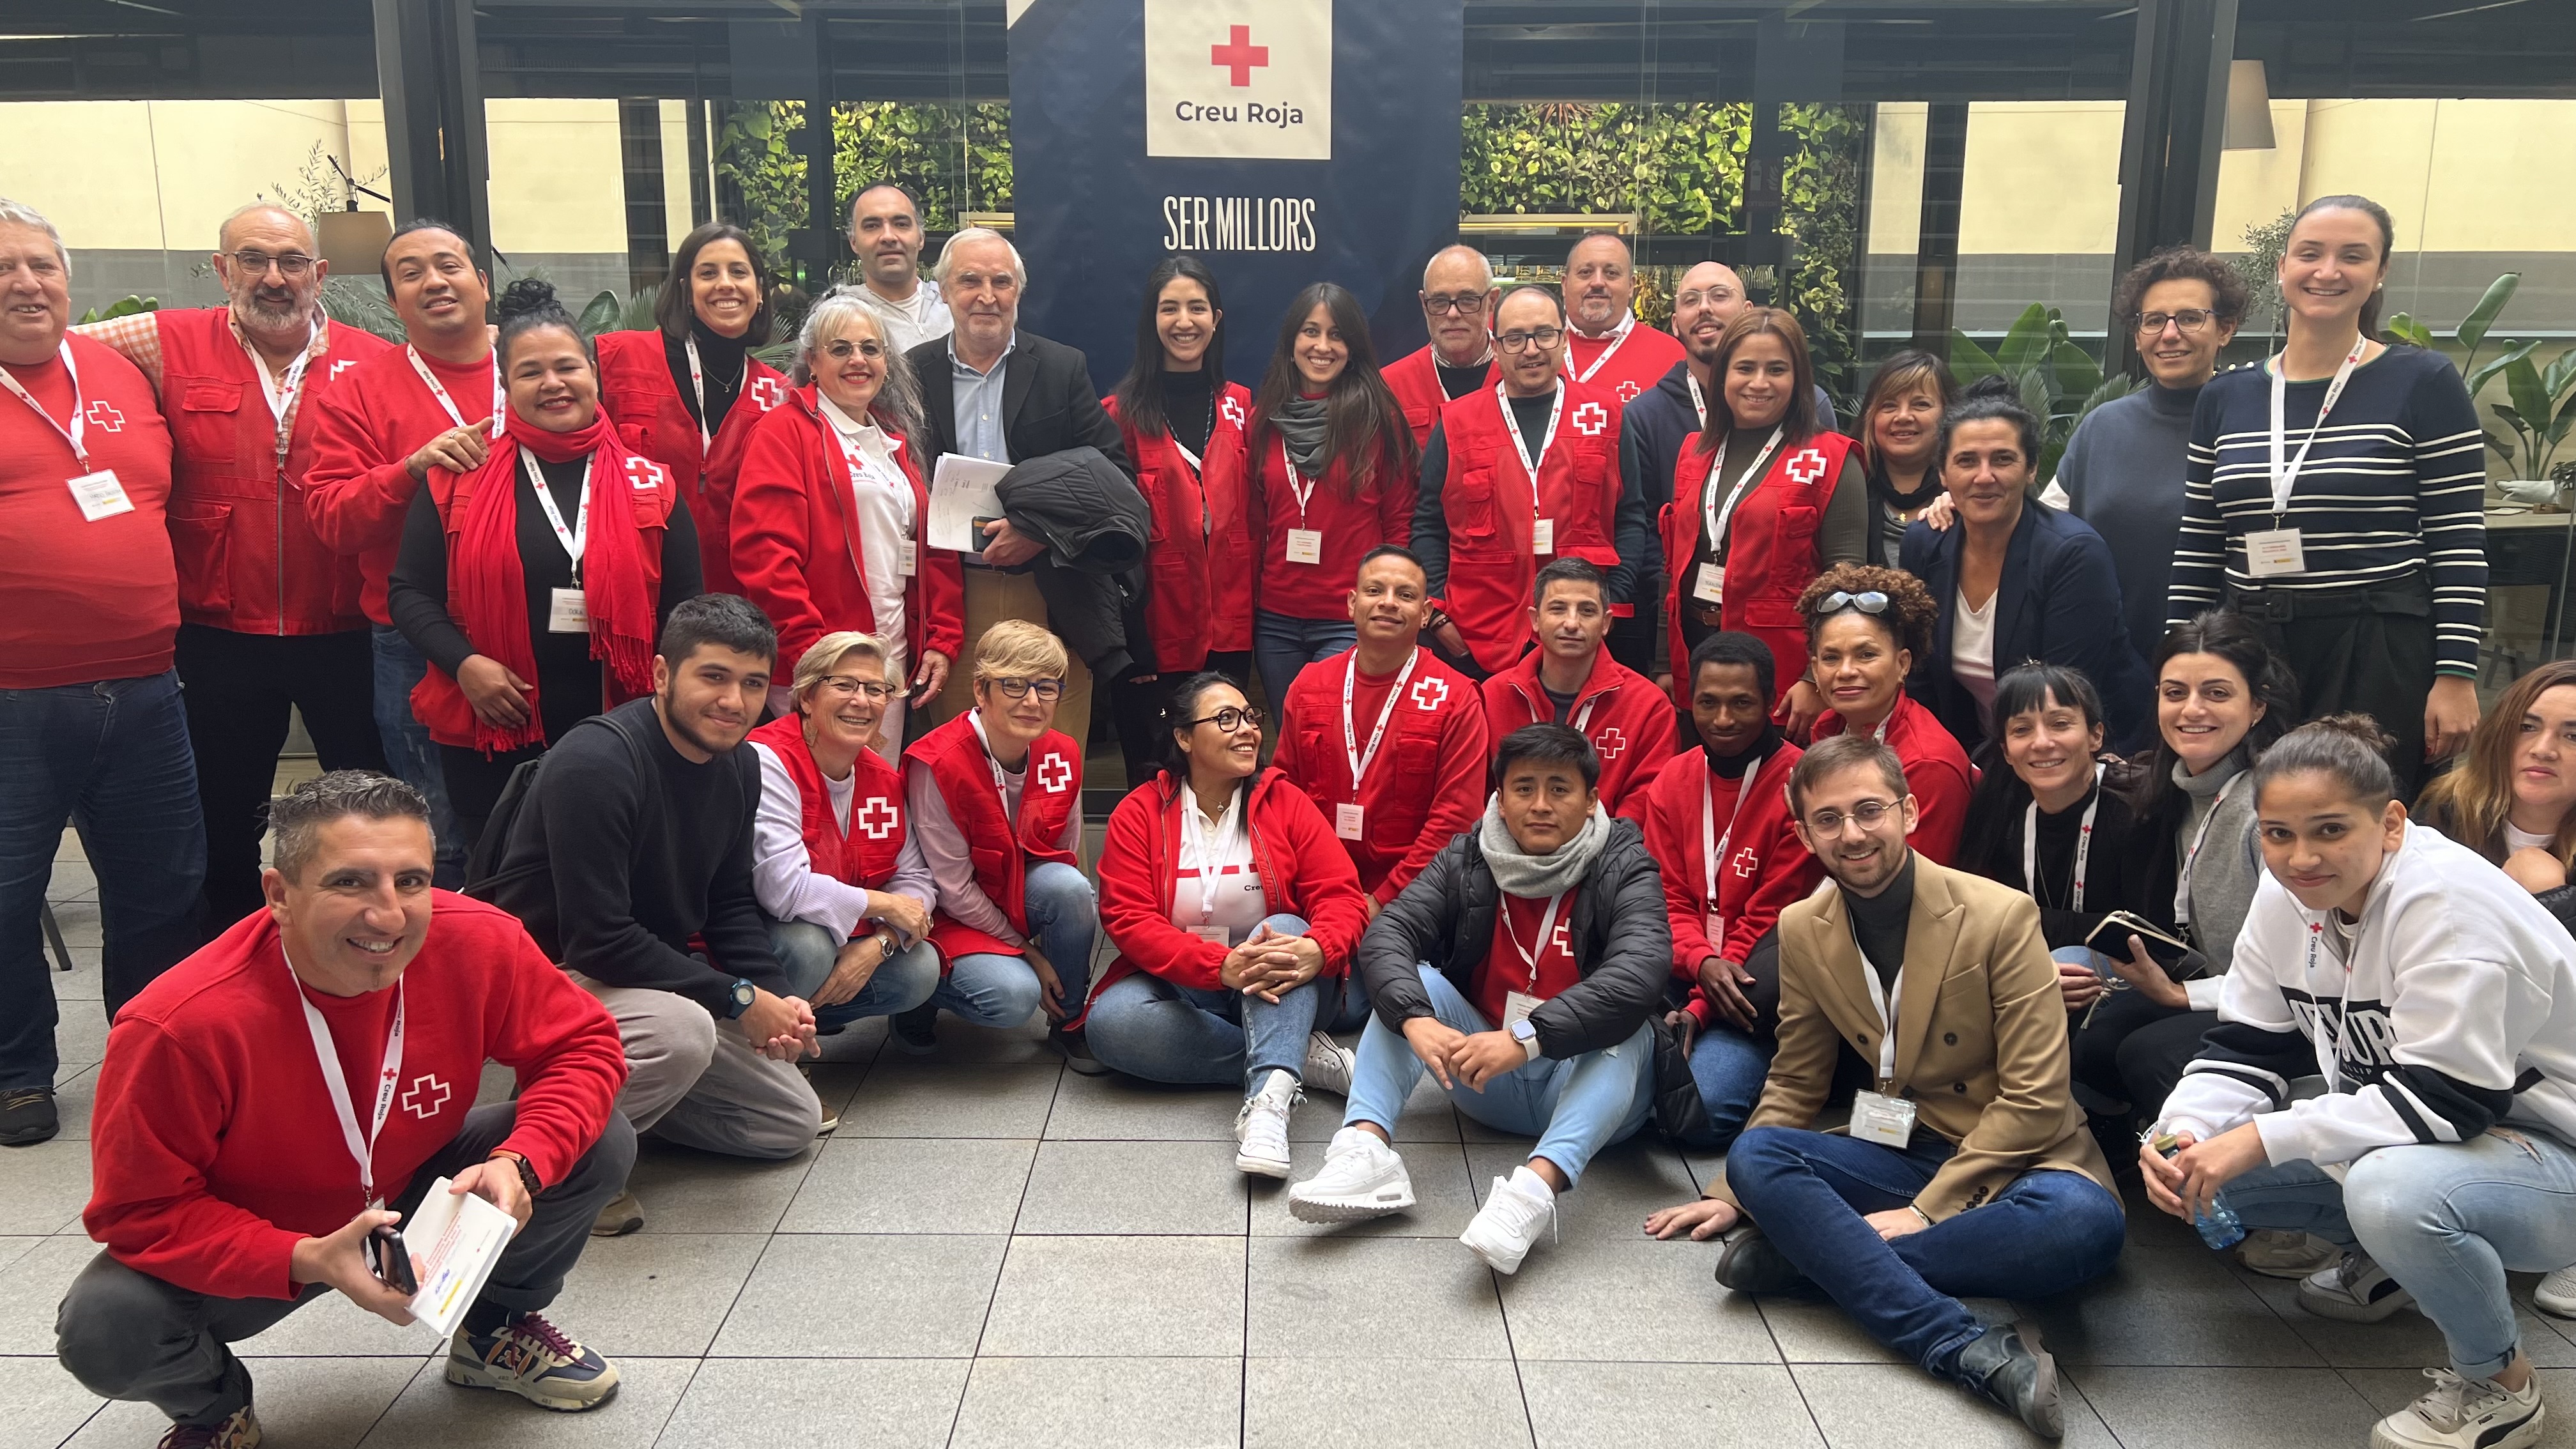 La Creu Roja celebra les primeres Jornades del Projecte de Primera Resposta en emergència per a població immigrant